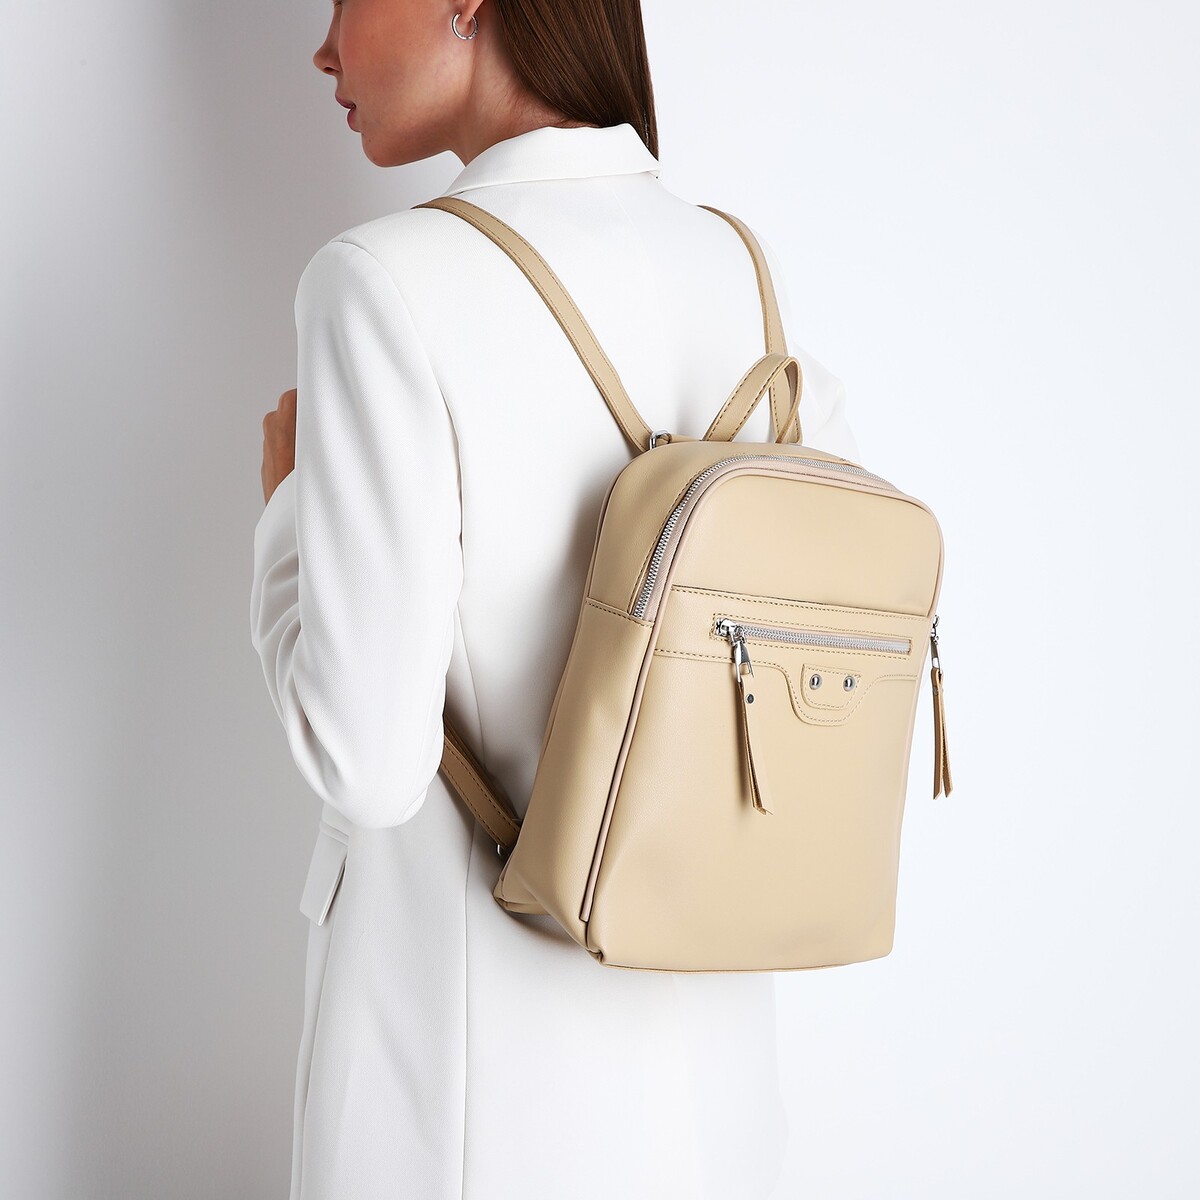 Рюкзак женский из искусственной кожи на молнии, 3 кармана, цвет бежевый рюкзак на молнии 3 наружных кармана бежевый